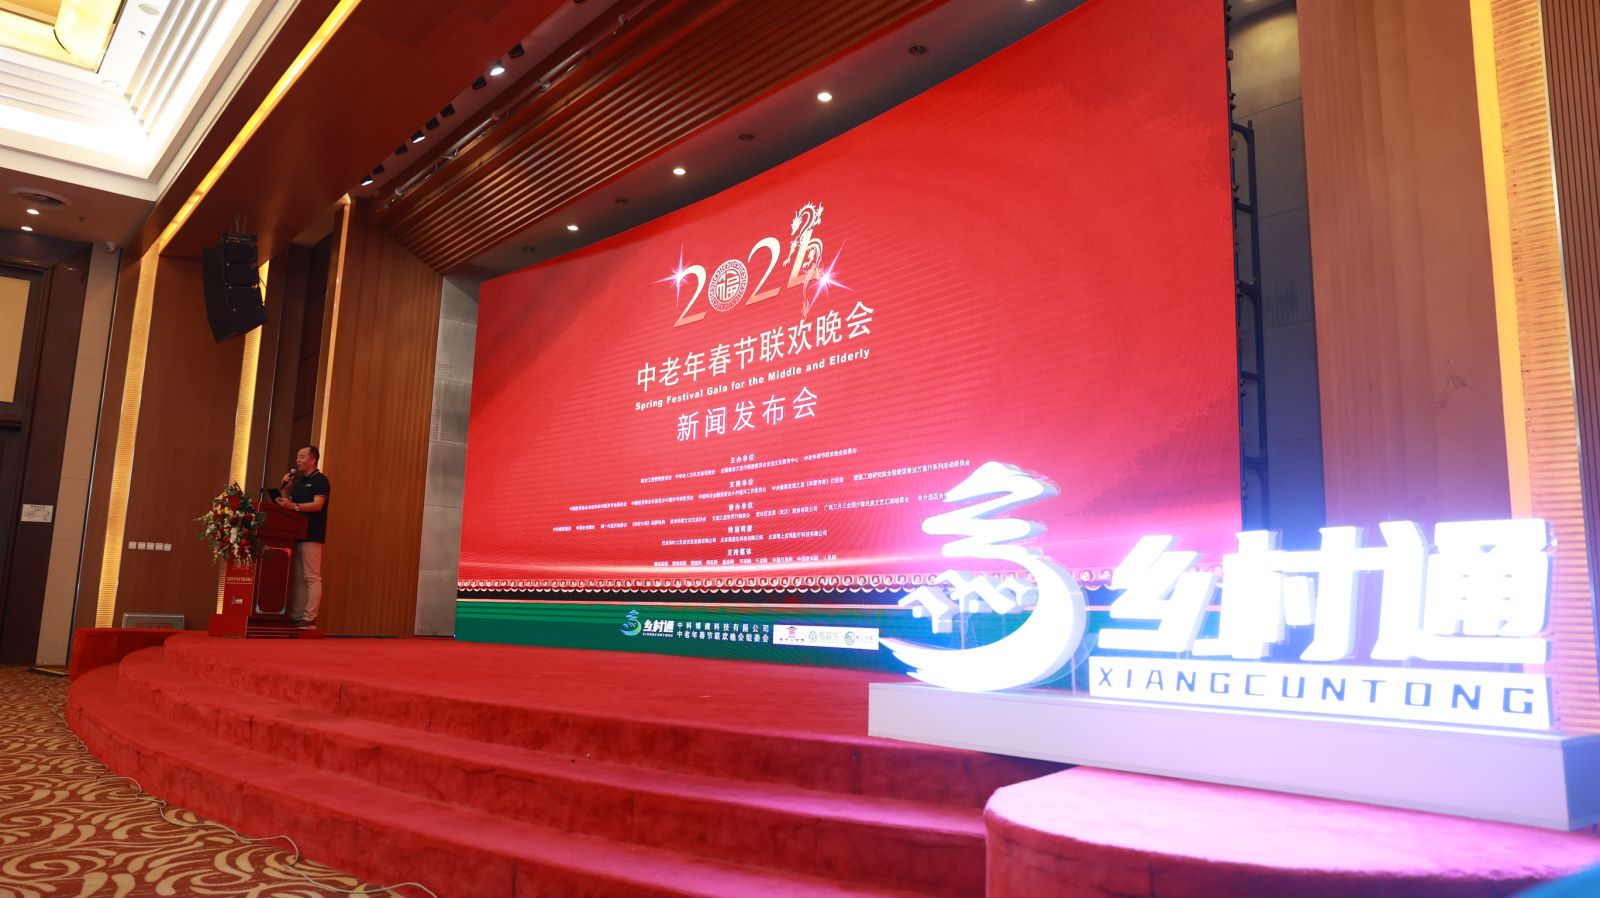 “2024中老年春节联欢晚会”新闻发布会及启动仪式在京举行